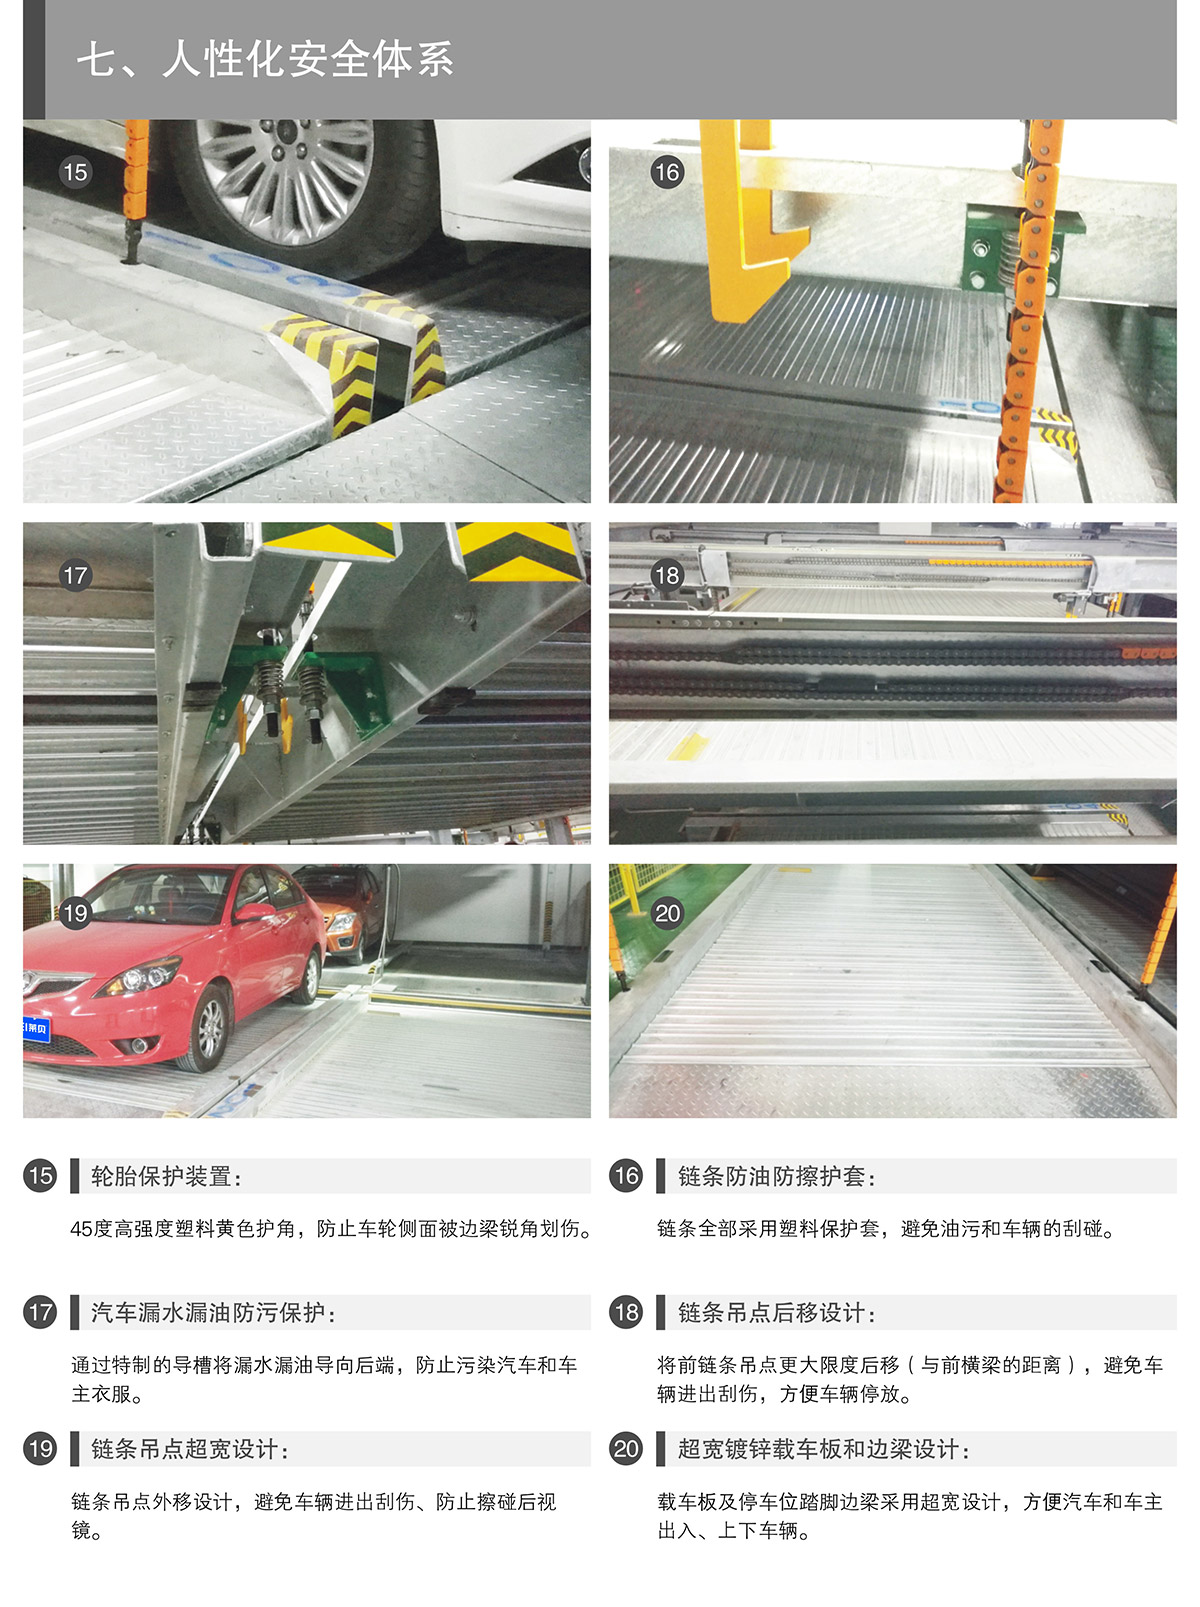 四川PSH4-6四至六层升降横移类机械式立体停车设备人性化安全体系.jpg